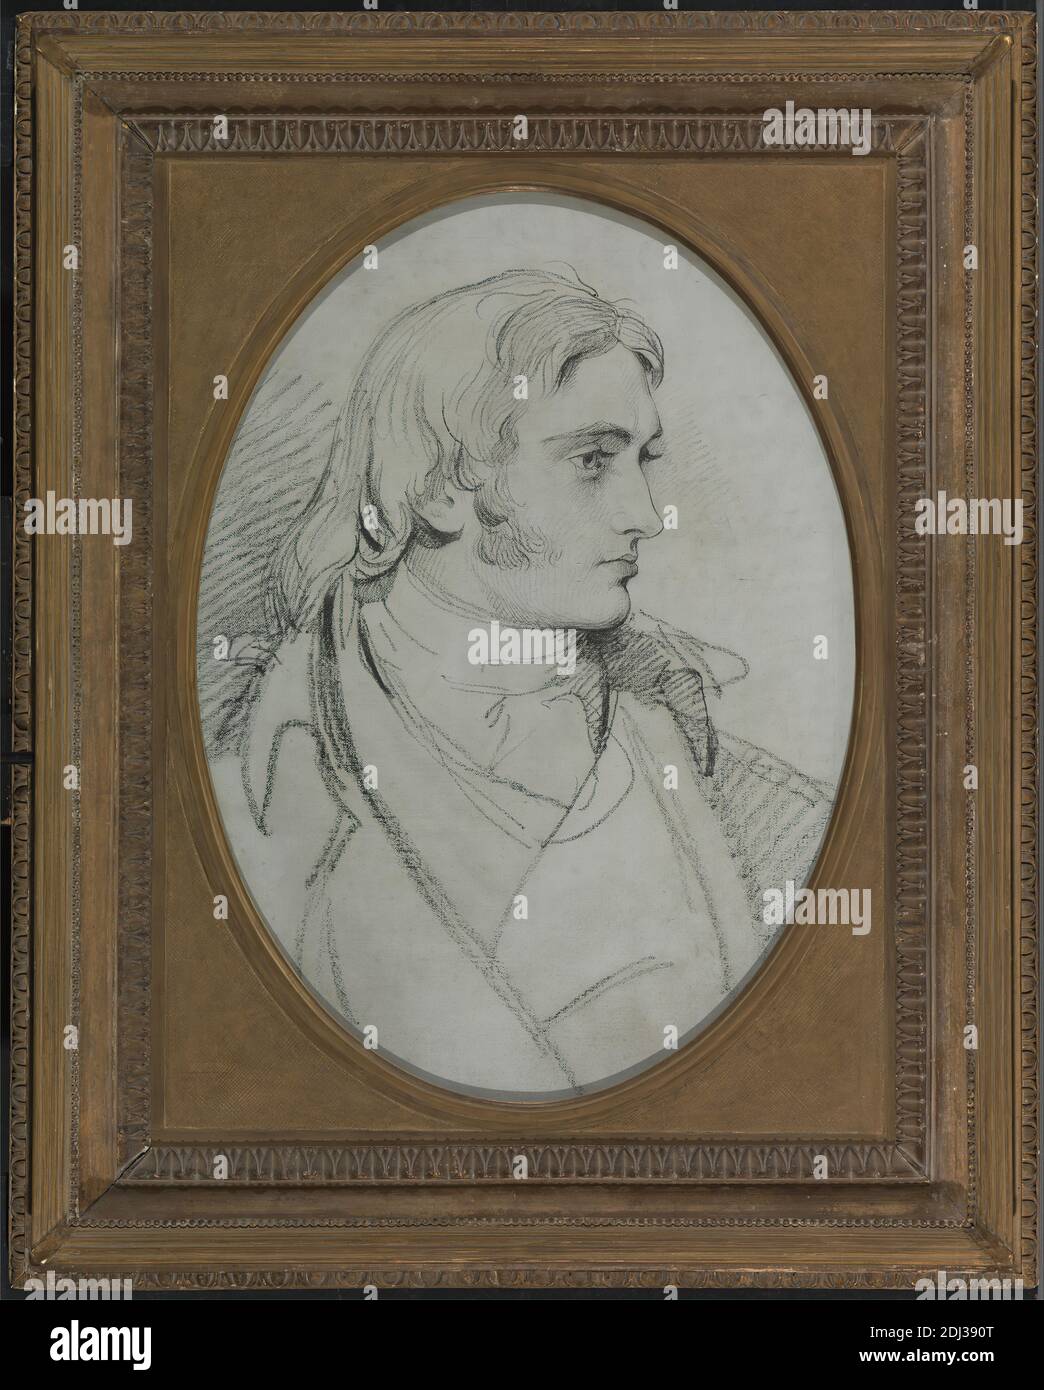 Portrait de l'écluse William II de Norbury Park, Surrey, sir Thomas Lawrence, 1769–1830, British, vers. 1800, charbon de bois huilé et gris-bleu sur toile, cadre: 34 1/2 x 28 x 3 1/4 pouces (87.6 x 71.1 x 8.3 cm) et feuille: 26 x 19 pouces (66 x 48.3 cm), manteau, costume, regard, cheveux longs, homme, portrait, pose, chemise, solennel Banque D'Images